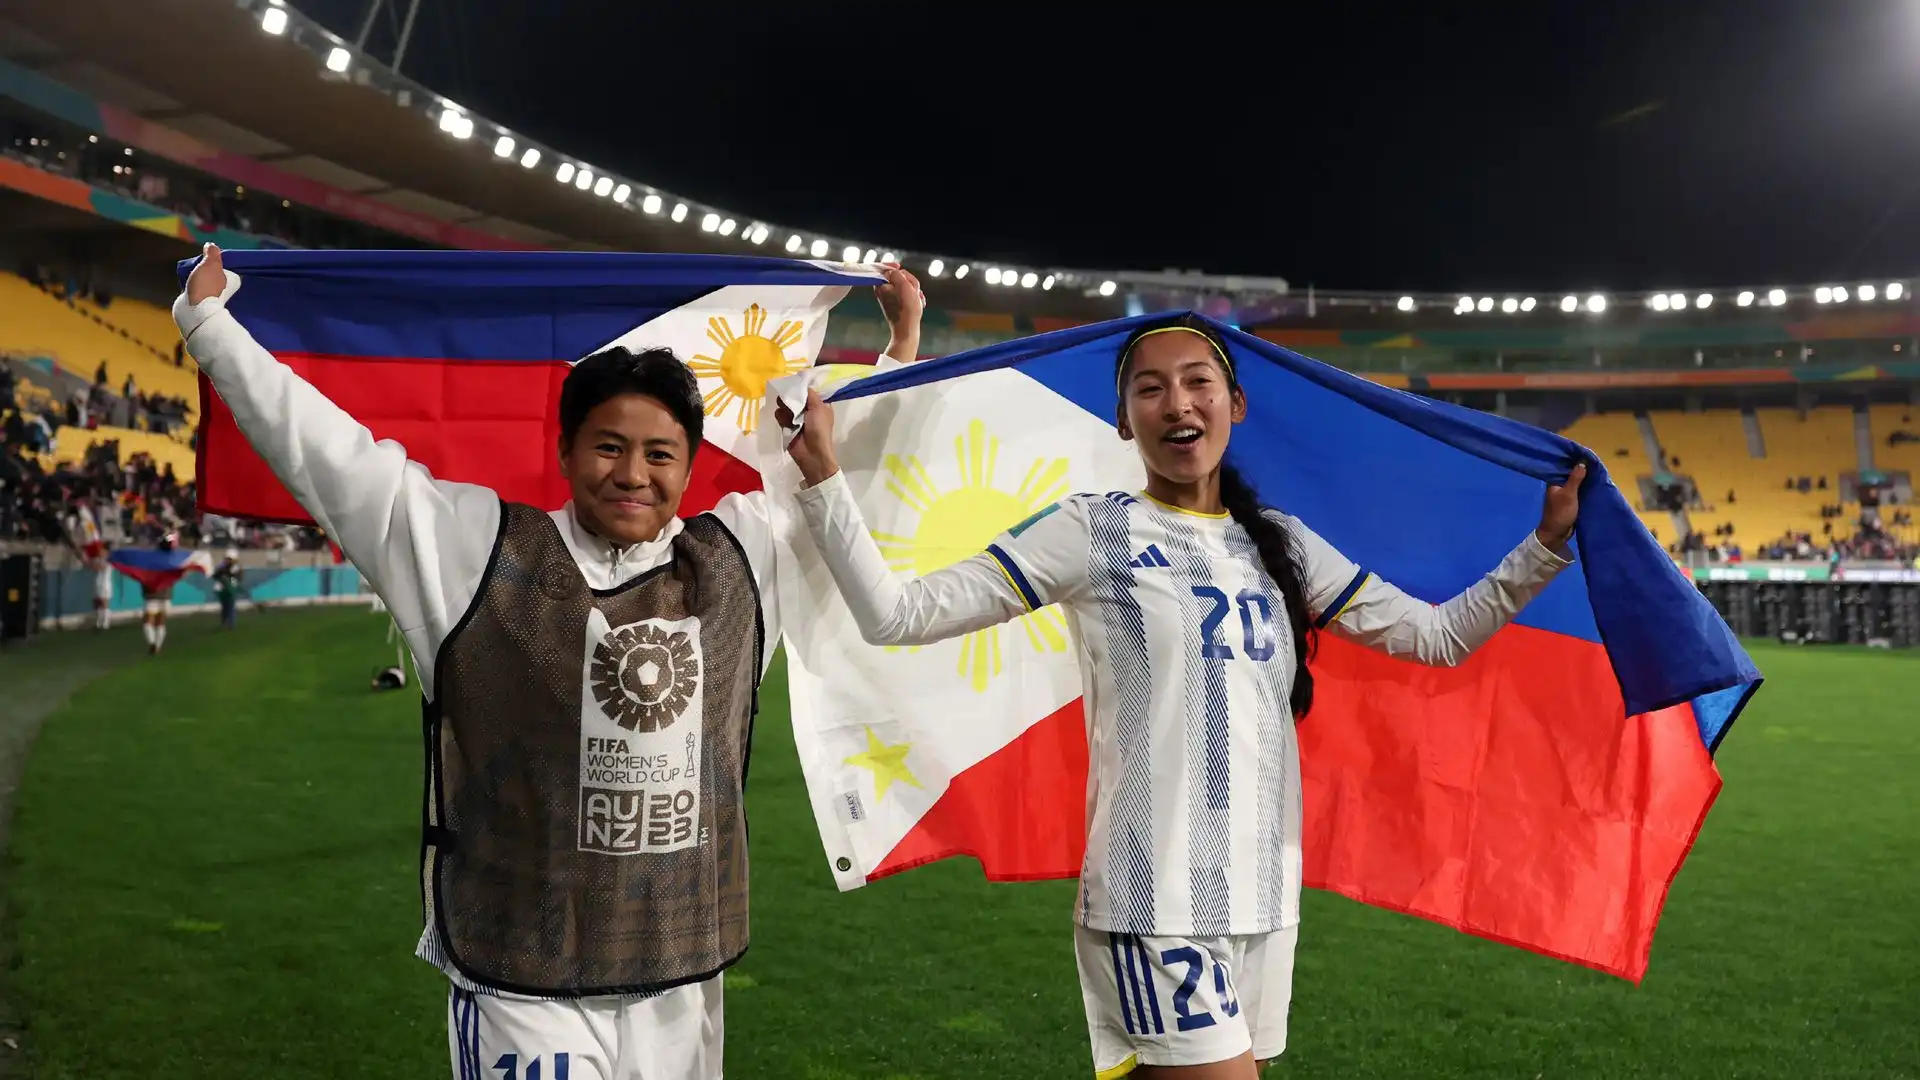 Nel finale una paratona del portiere filippino, Olivia McDaniel, ha salvato lo storico risultato